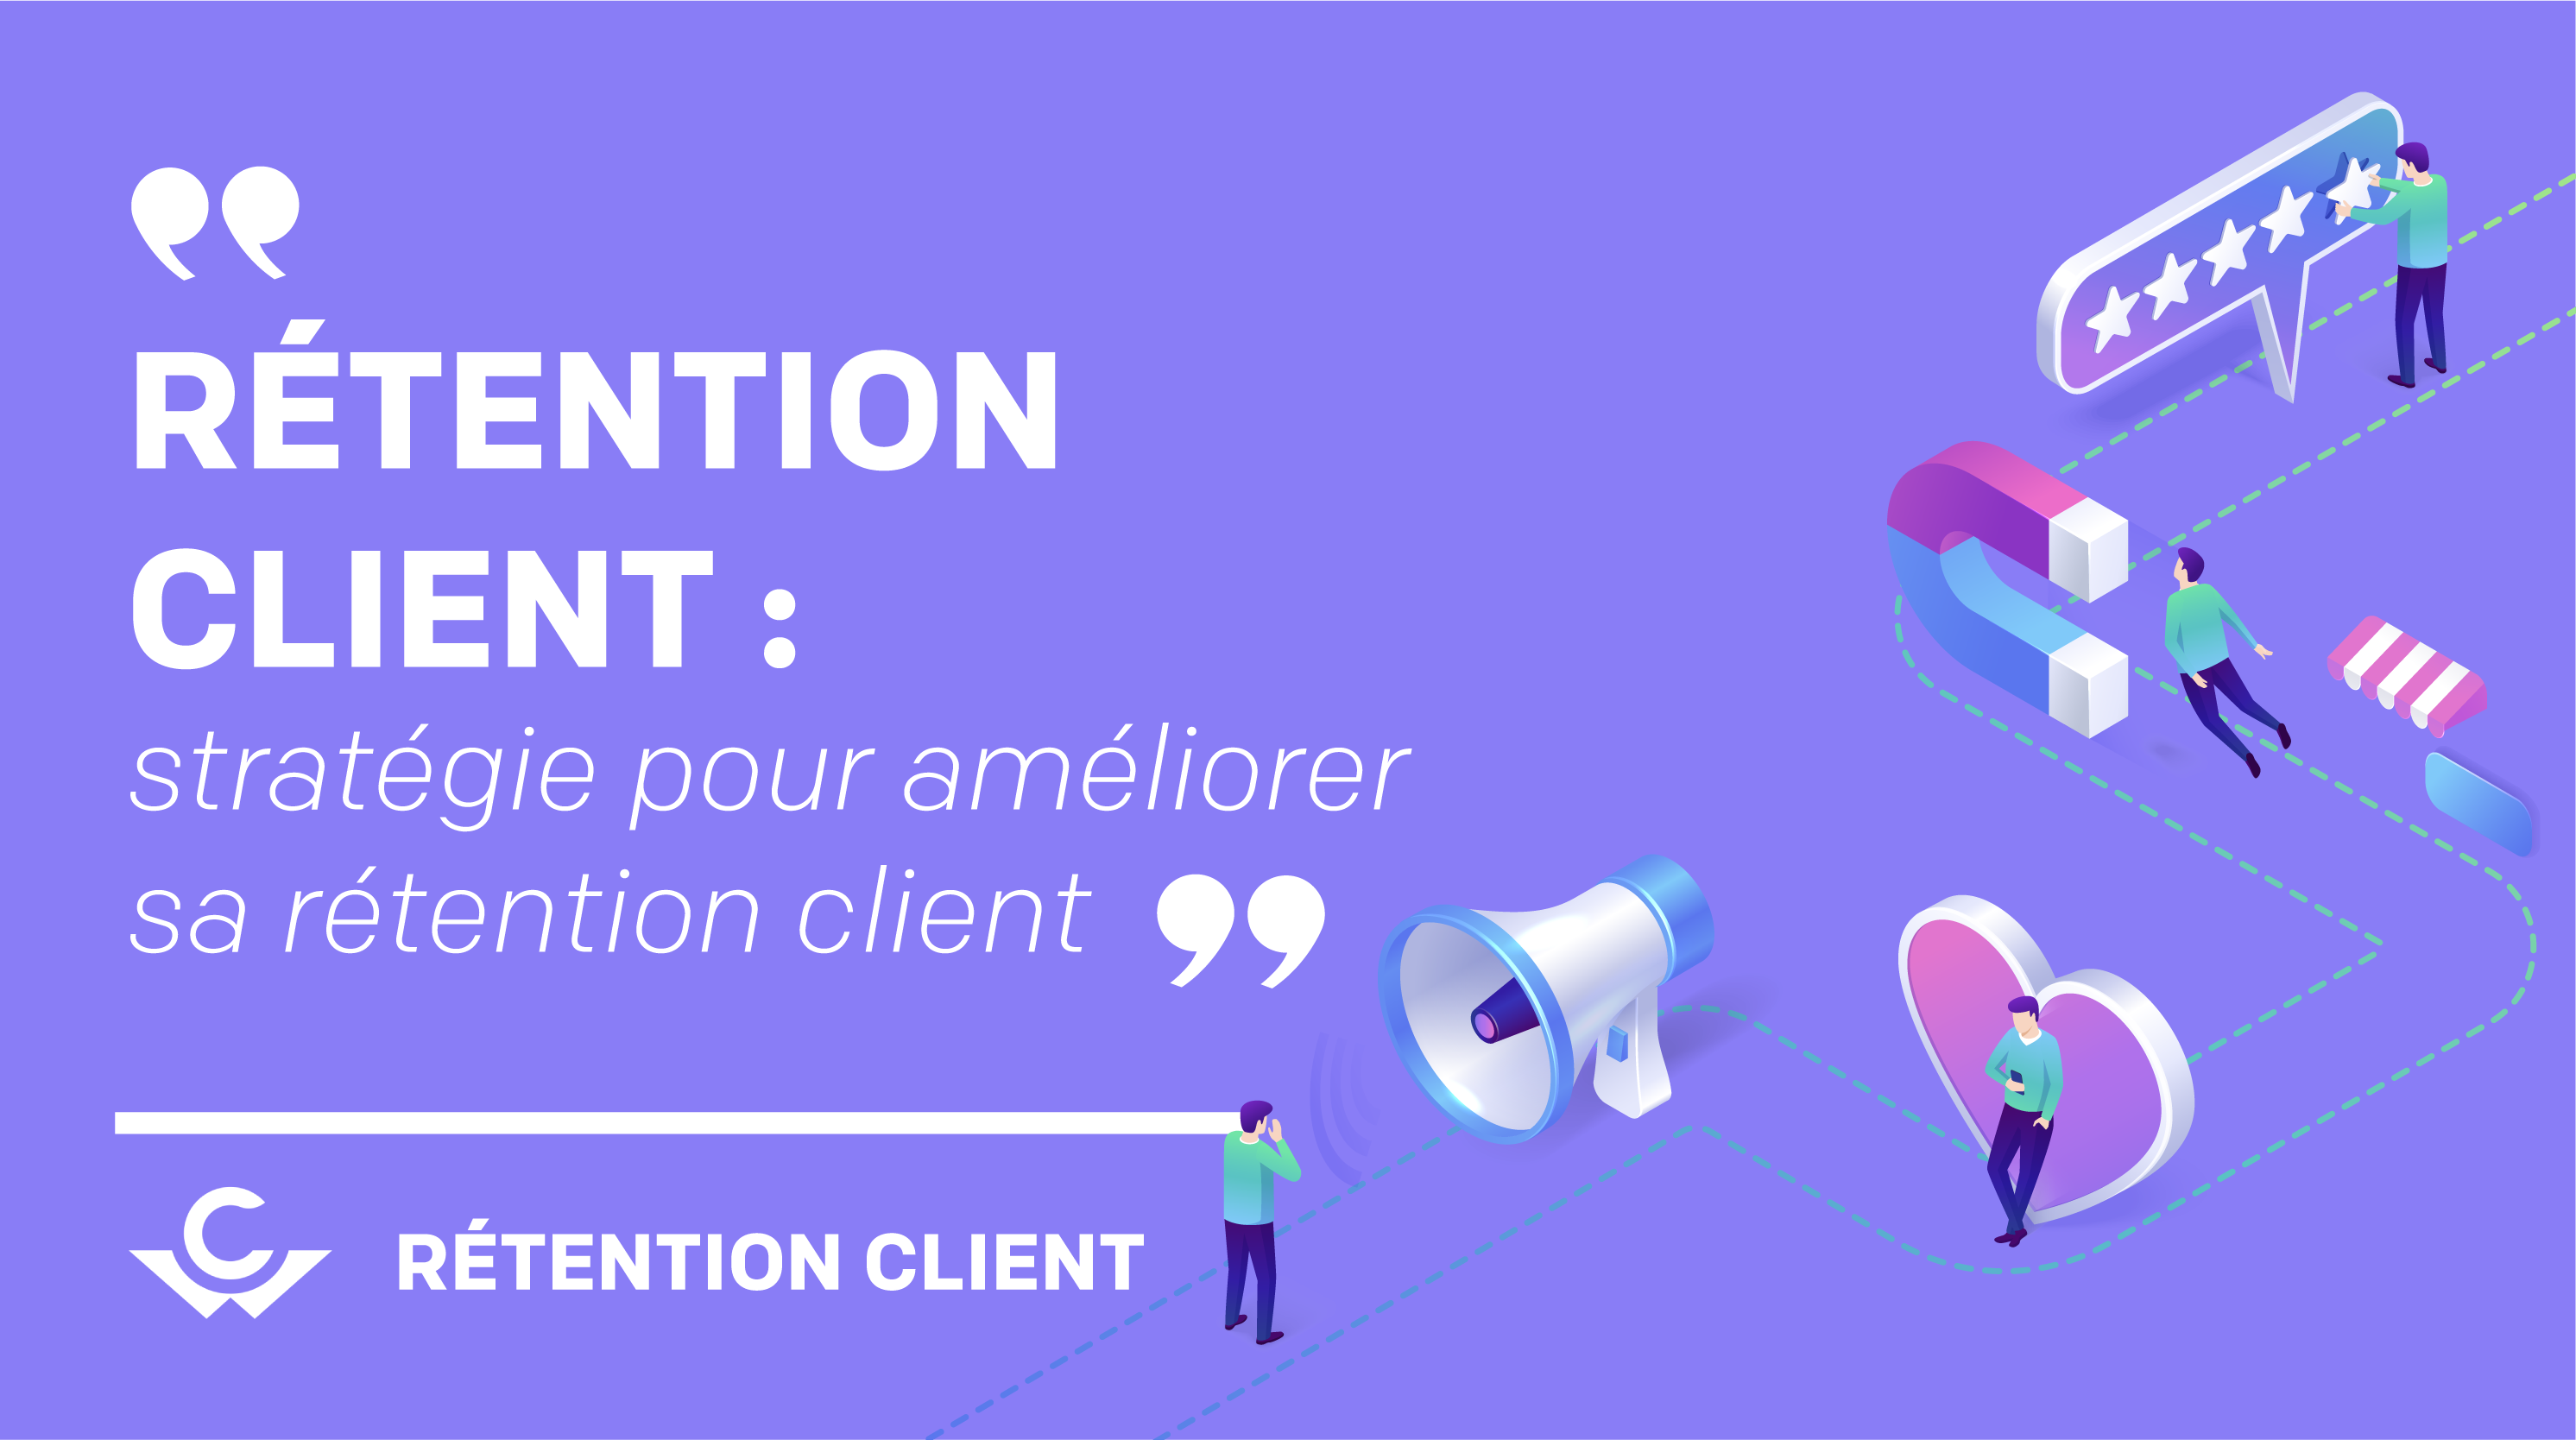 retention_client_strategie_pour_ameliorer_la_retention_client